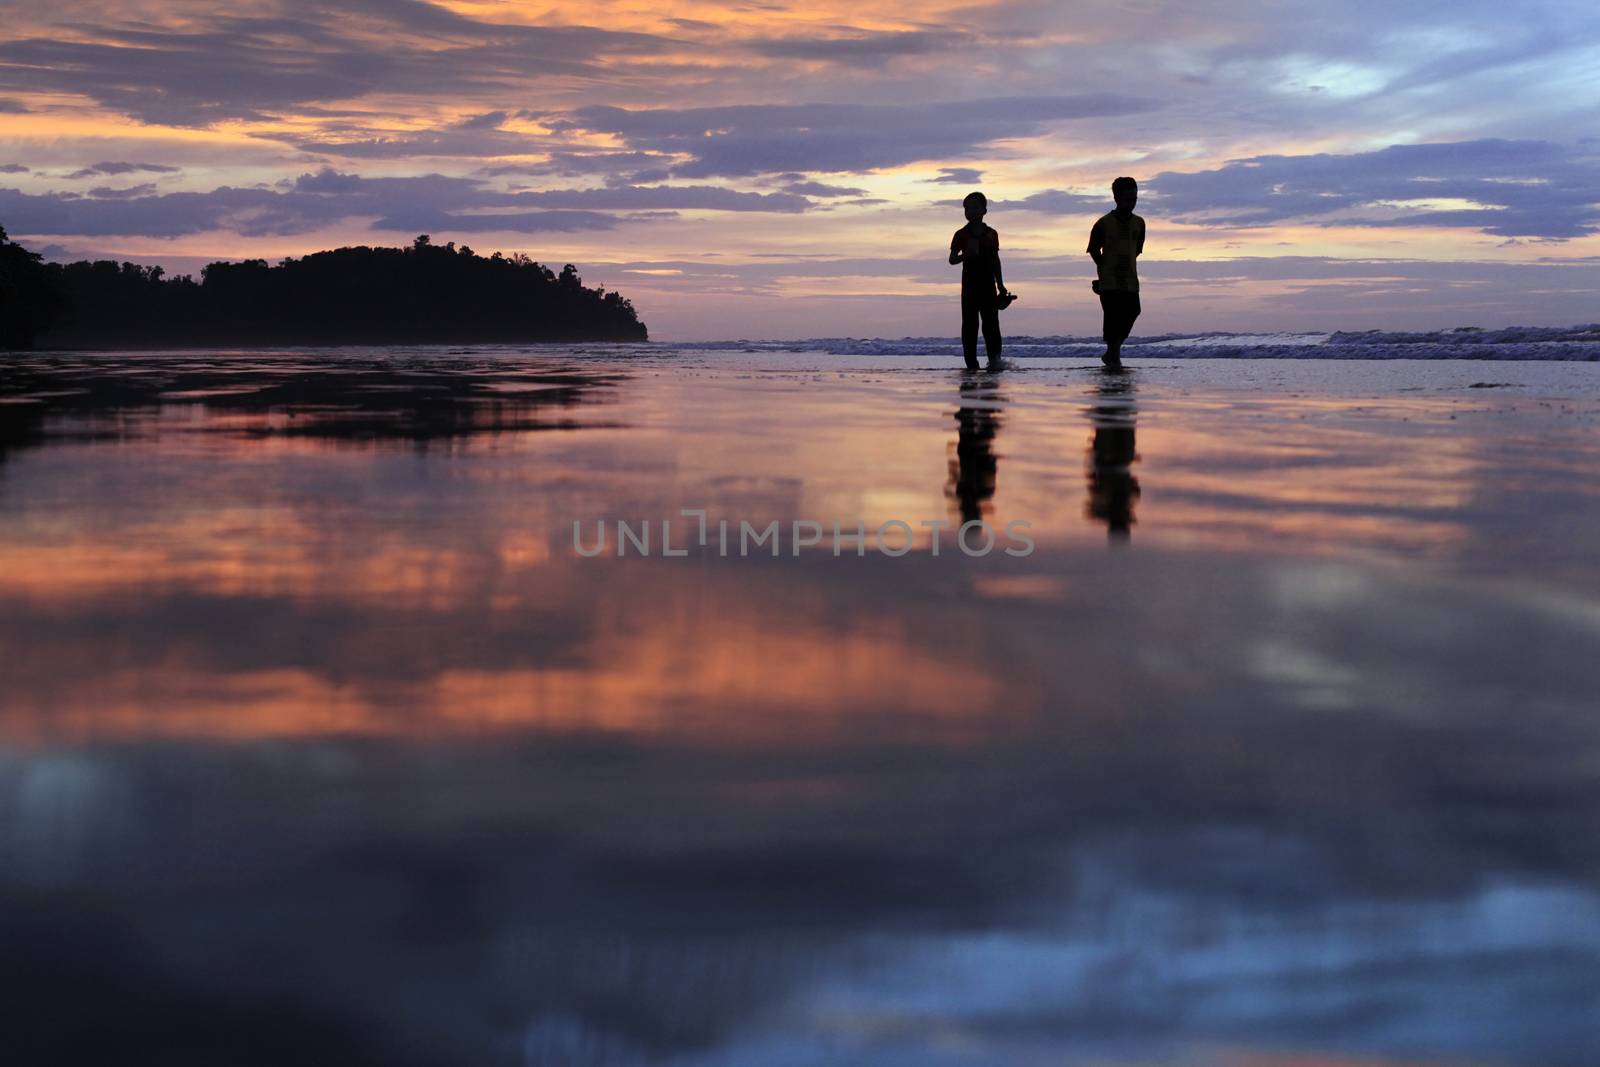 Coast of the South China Sea on sunset. Borneo